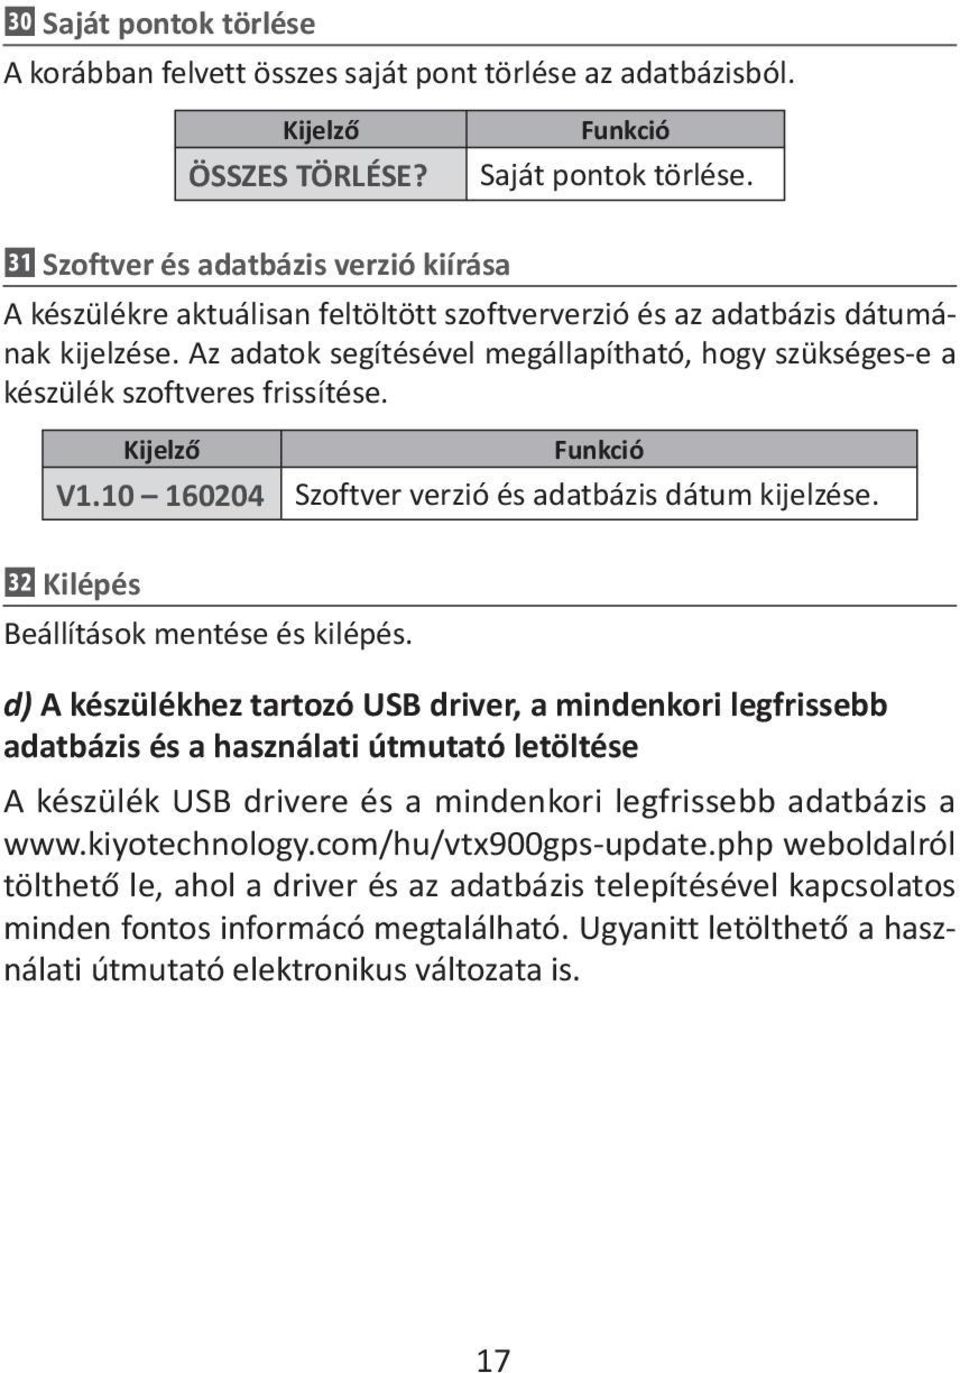 d) A készülékhez tartozó USB driver, a mindenkori legfrissebb adatbázis és a használati útmutató letöltése A készülék USB drivere és a mindenkori legfrissebb adatbázis a www.kiyotechnology.